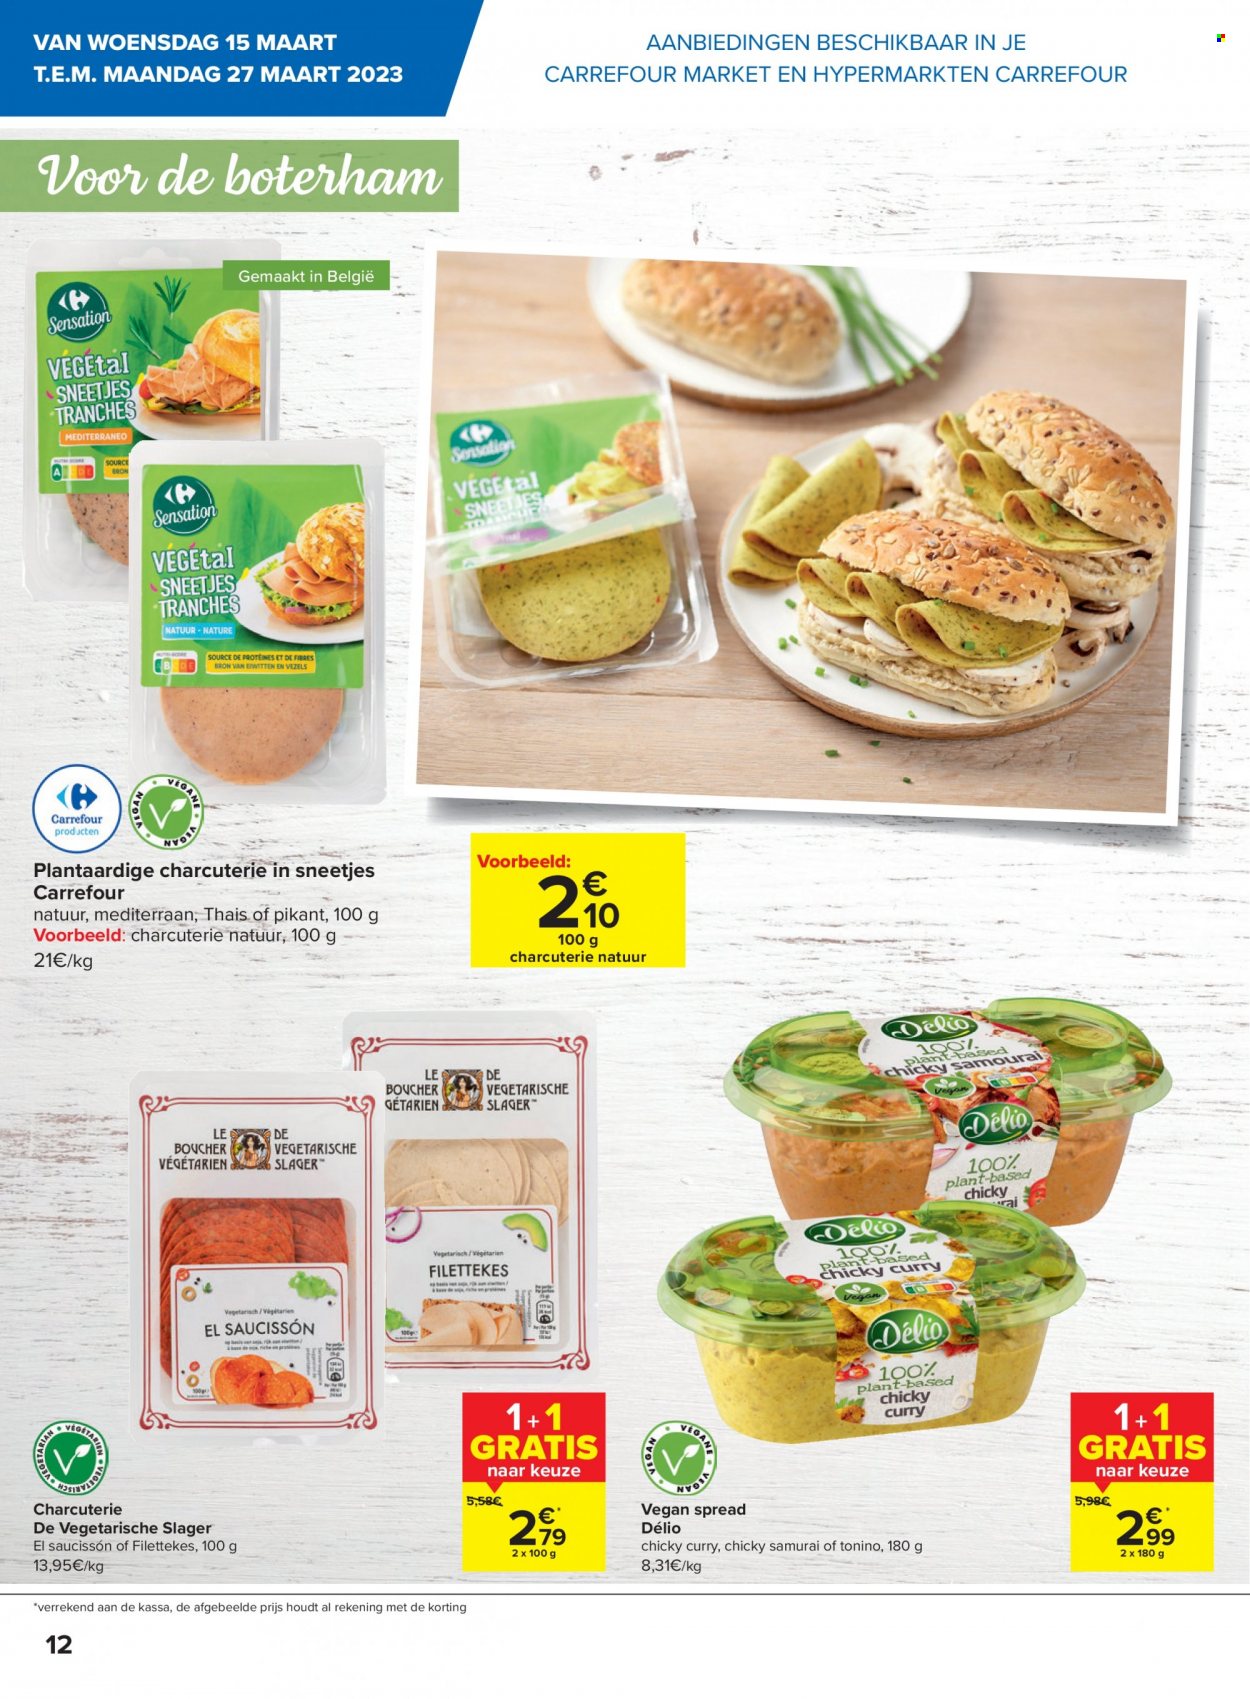 thumbnail - Catalogue Carrefour - 15/03/2023 - 27/03/2023 - Produits soldés - saucisson, curry. Page 12.